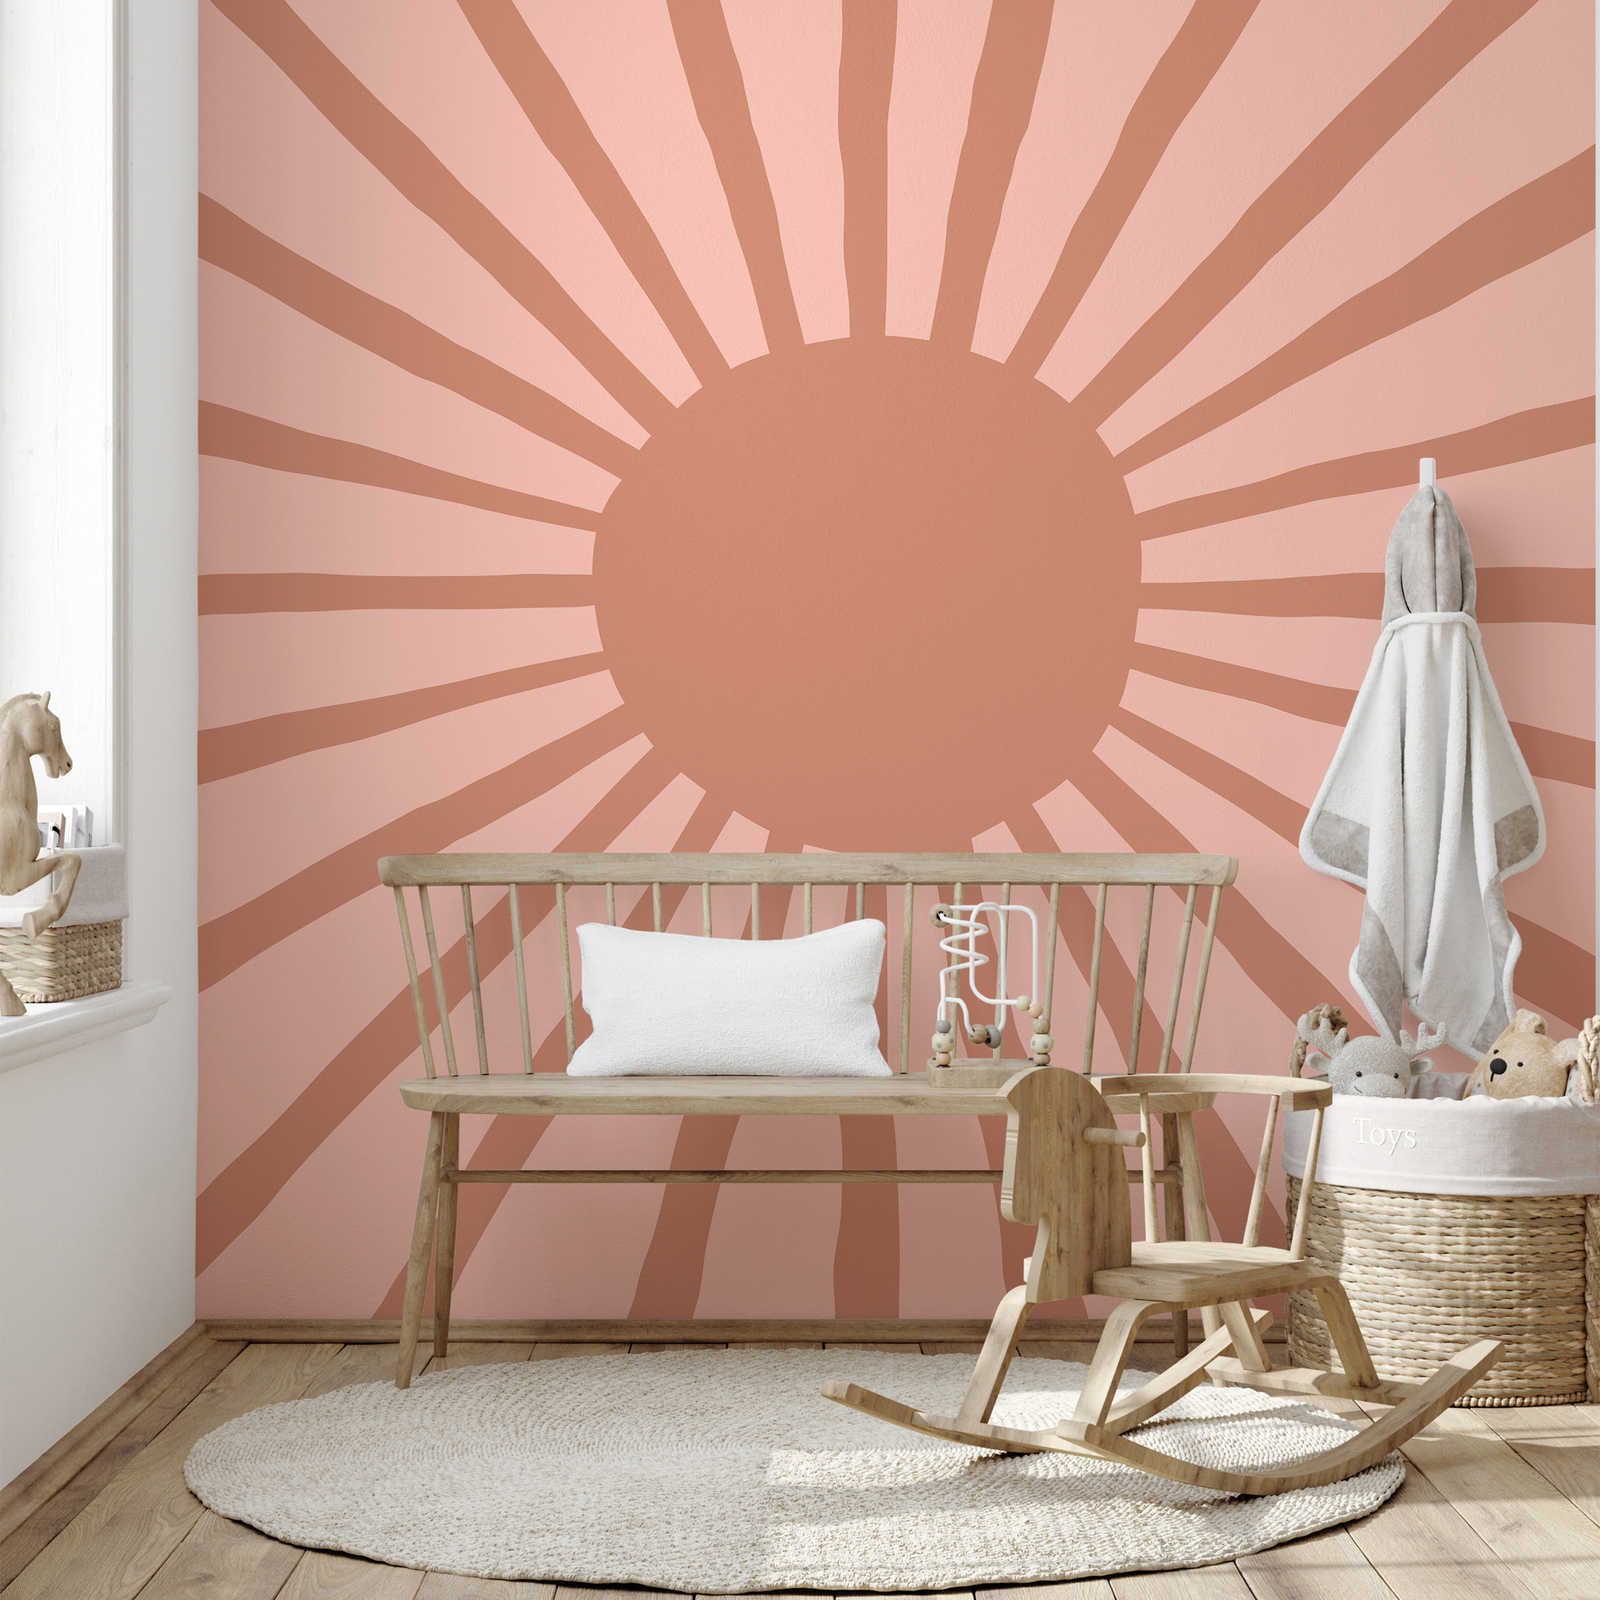 Fototapete abstrakte Sonne im gemalten Stil – Glattes & perlmutt-schimmerndes Vlies
